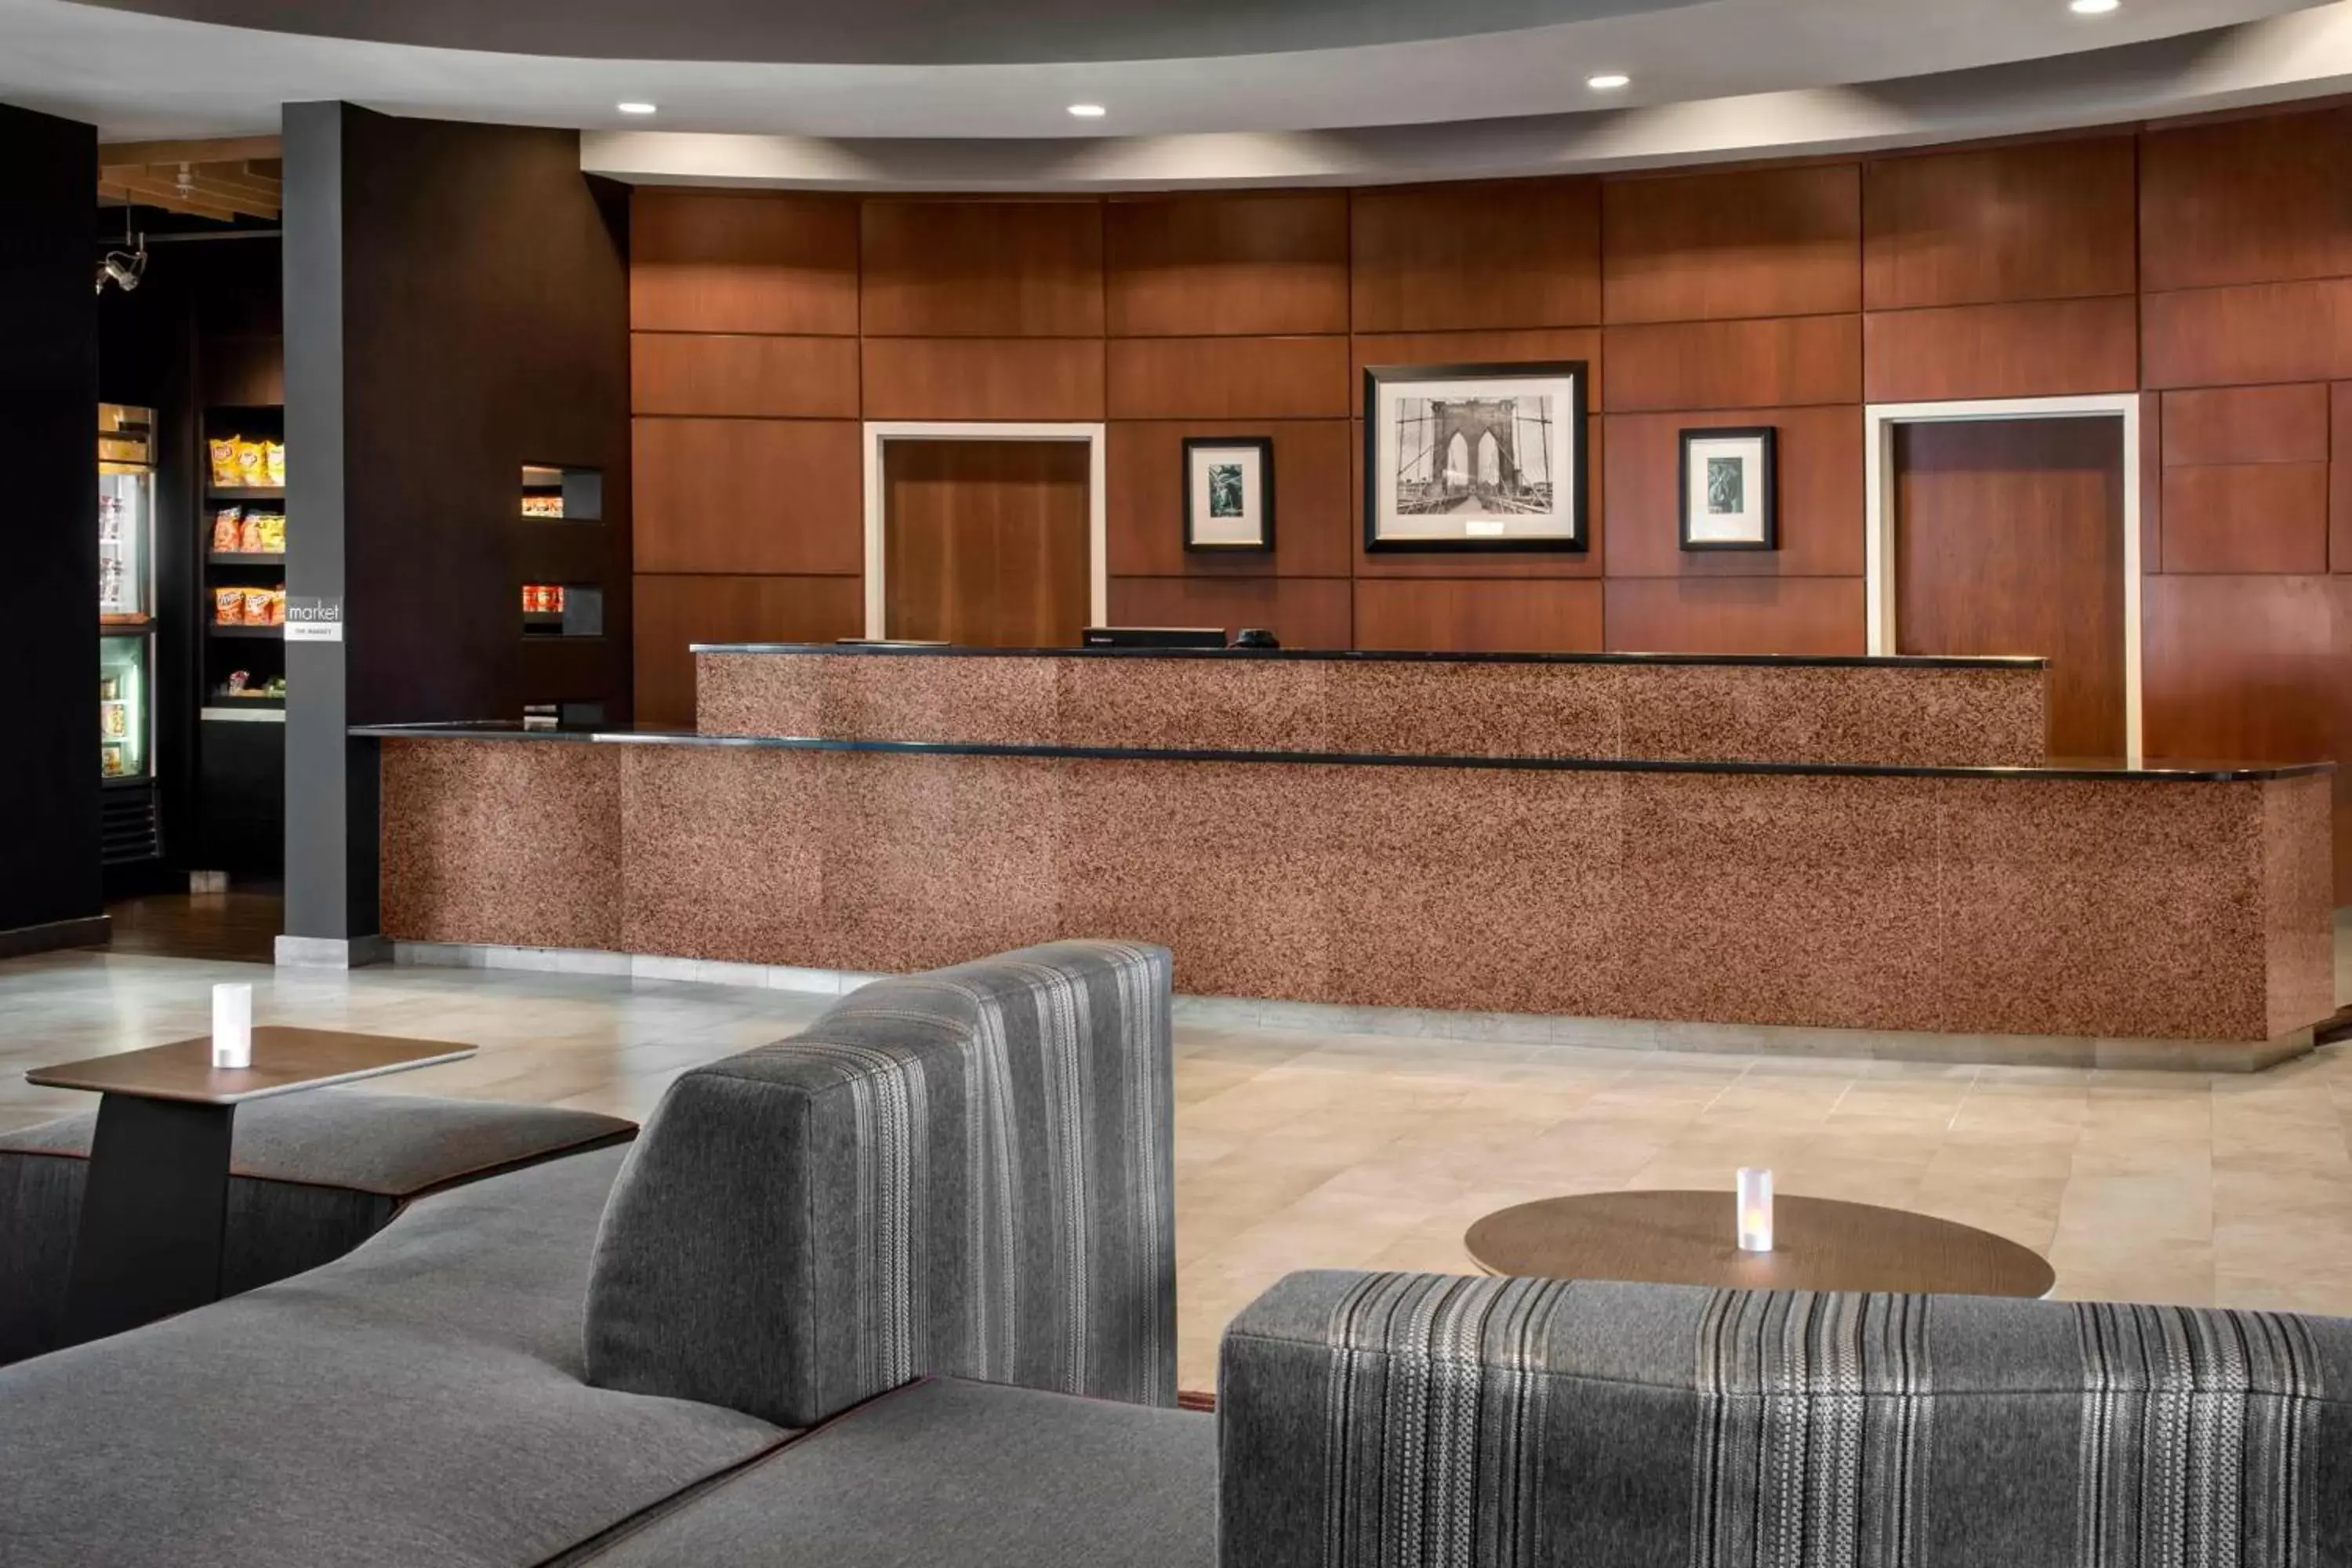 Lobby or reception, Lobby/Reception in Courtyard by Marriott Newark Elizabeth